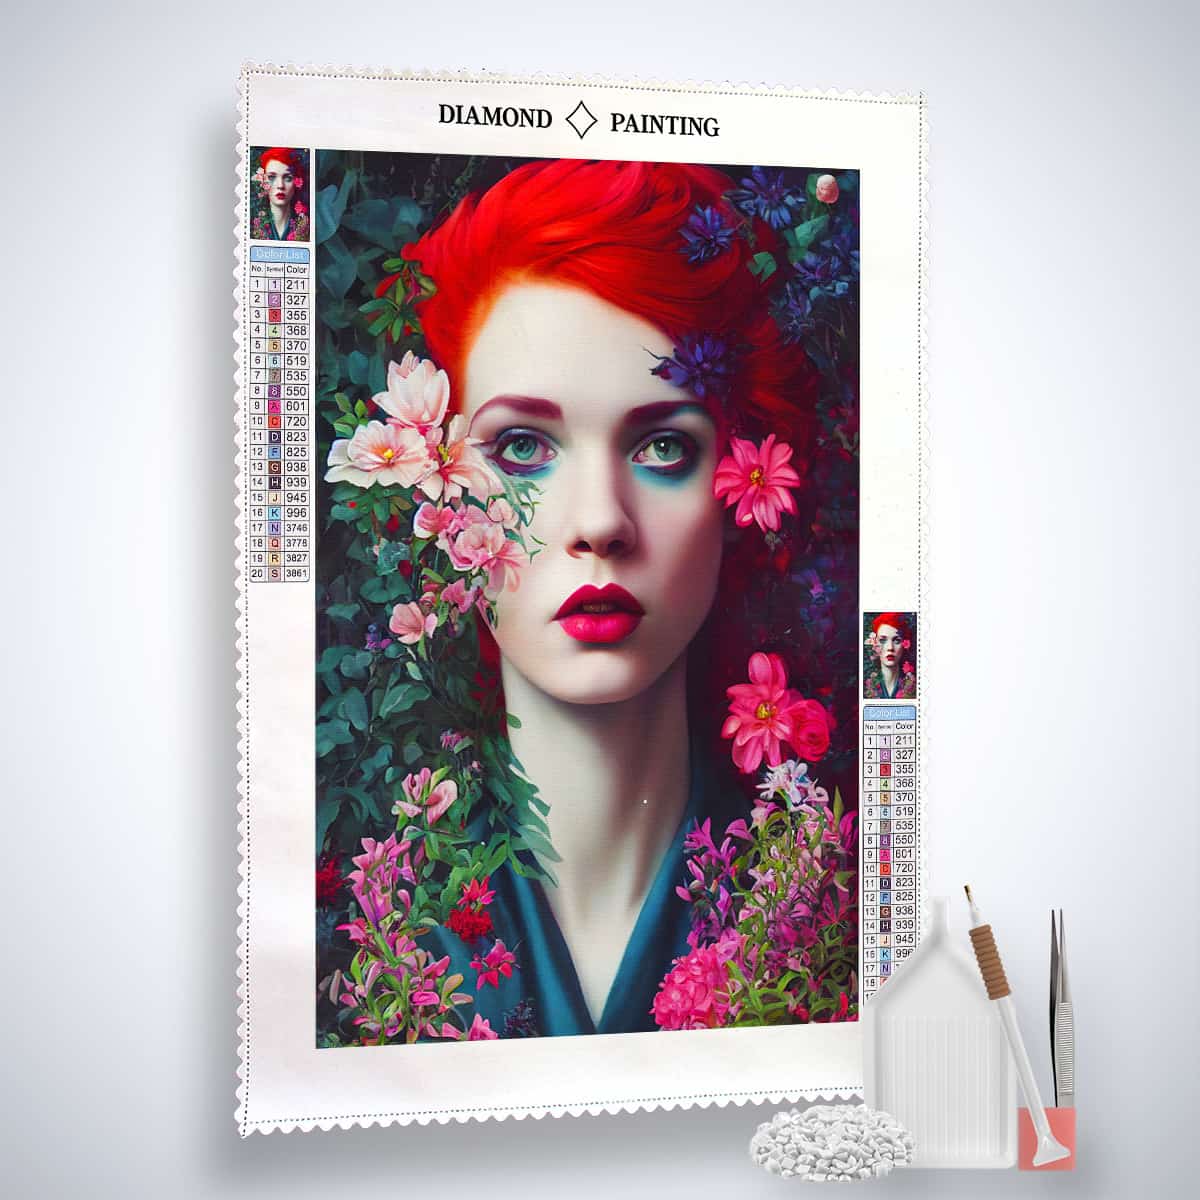 Diamond Painting - Frau mit roten Haaren und Blumen - gedruckt in Ultra-HD - Blumen, Menschen, Neu eingetroffen, Vertikal